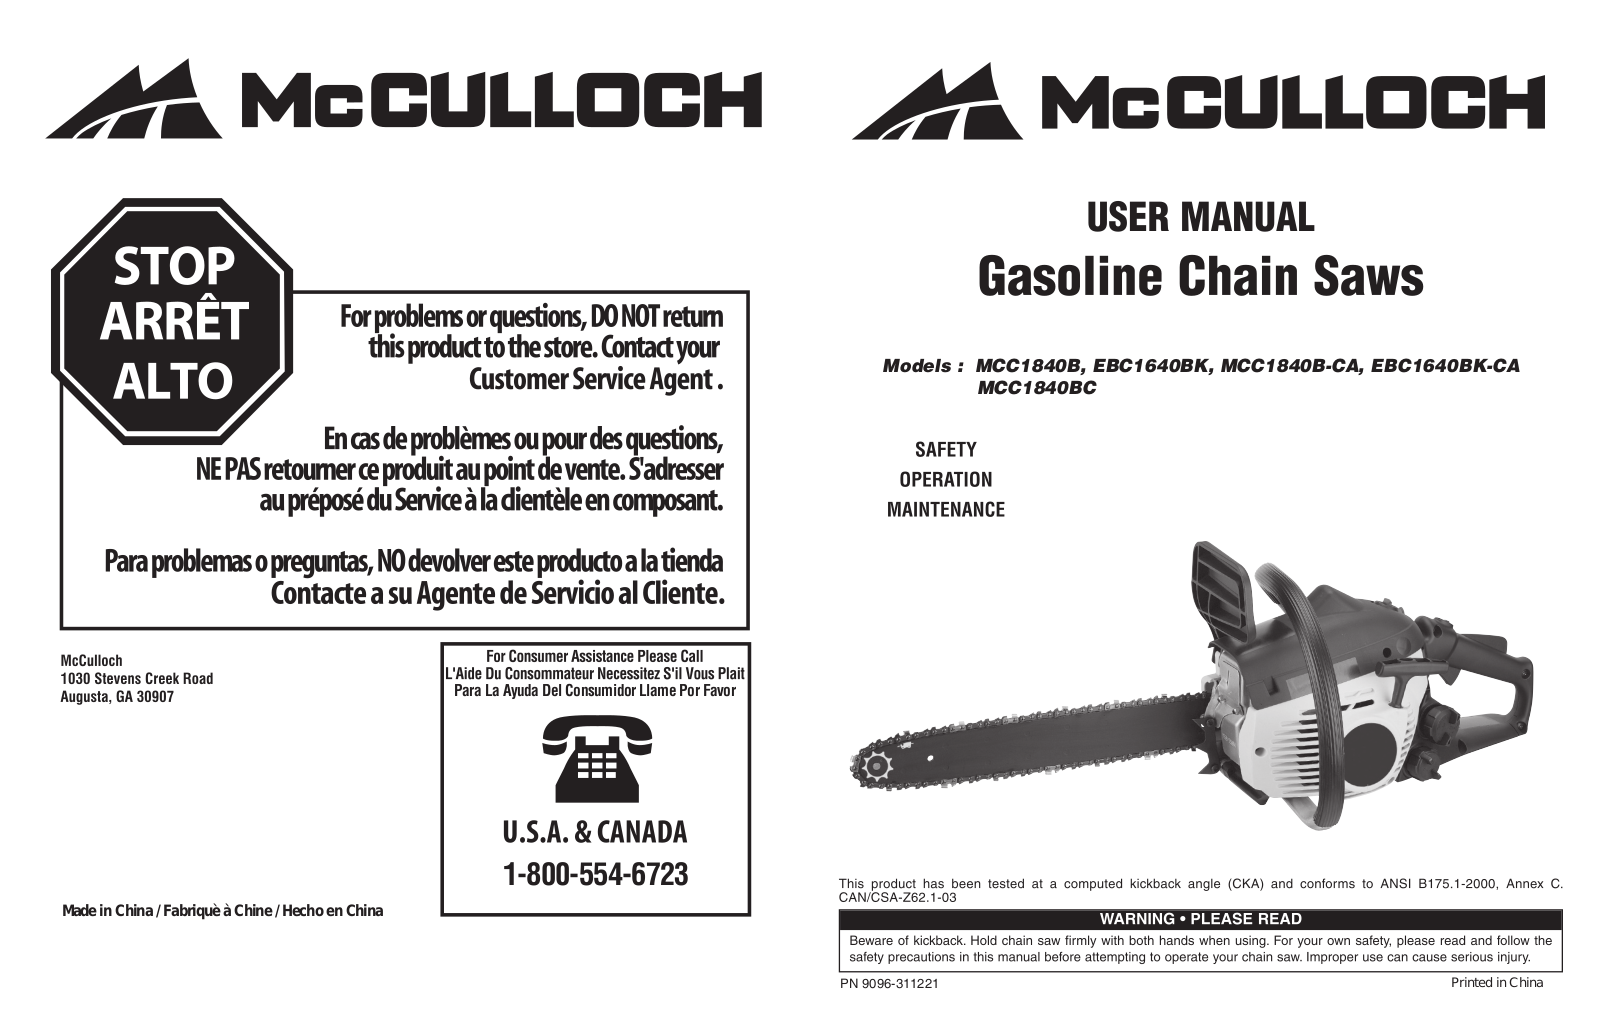 McCulloch MCC1840B, EBC1640BK, MCC1840B-CA, EBC1640BK-CA, MCC1840BC User Manual